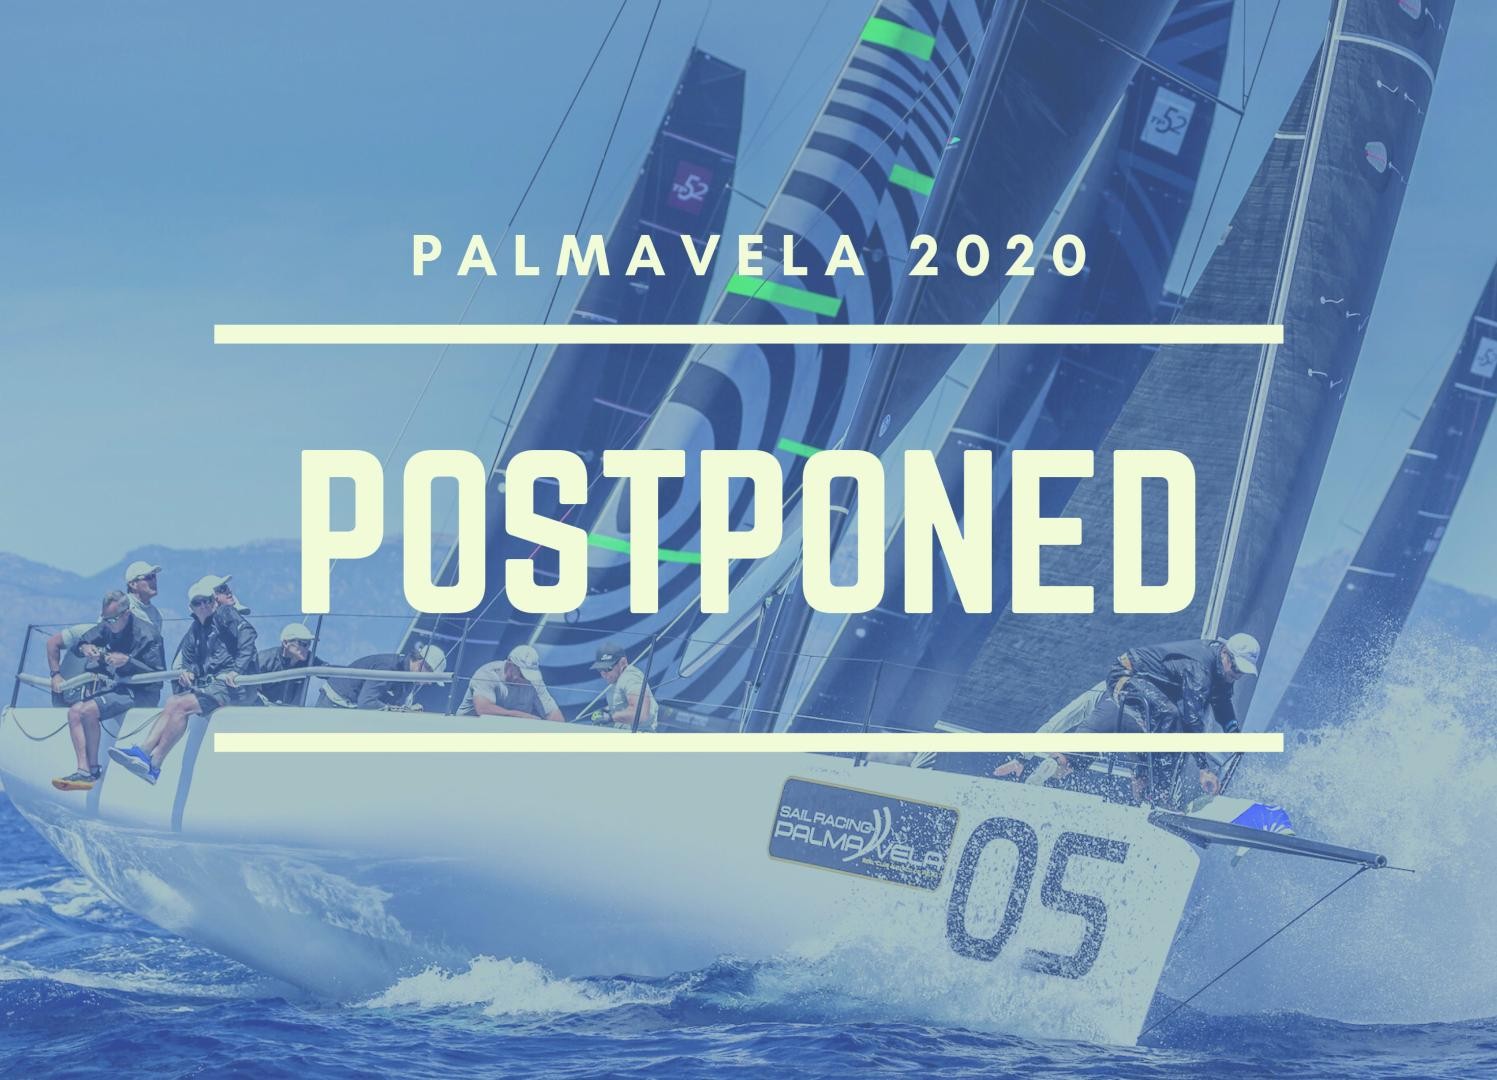 Postponement of 17th edition of PalmaVela due to coronavirus